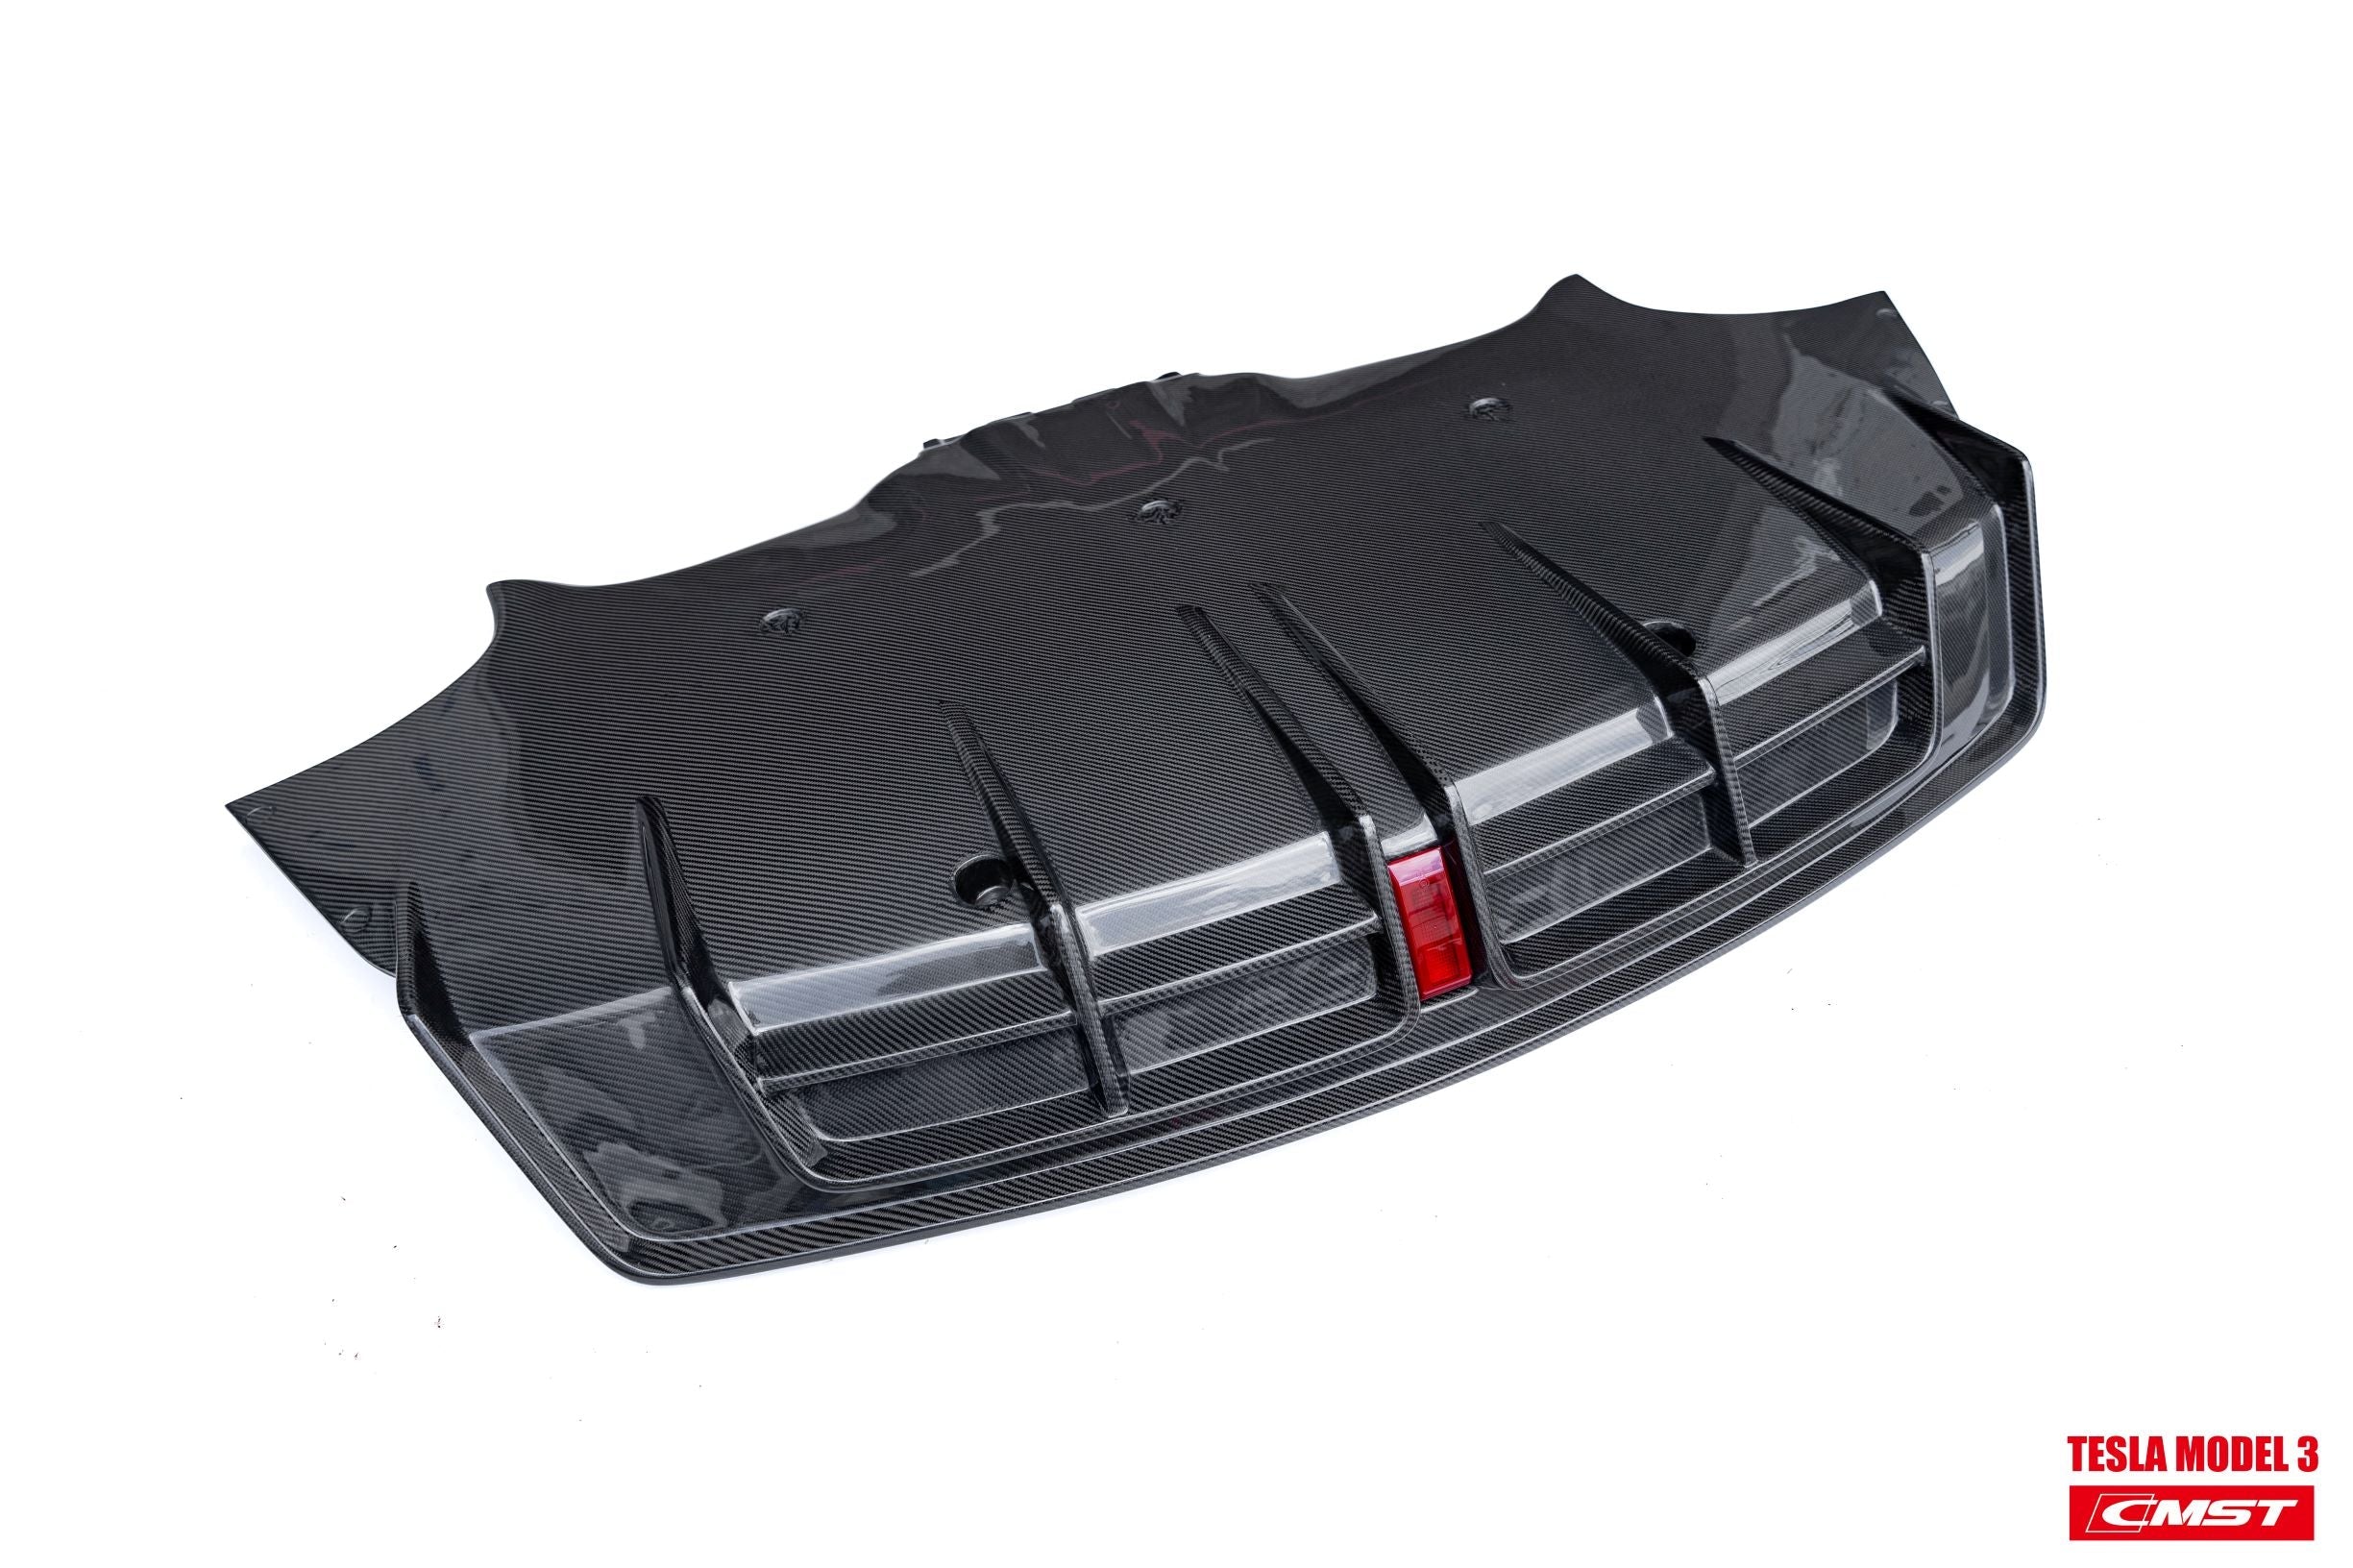 CMST Carbon Fiber Full Body Kit Style D for Tesla Model 3